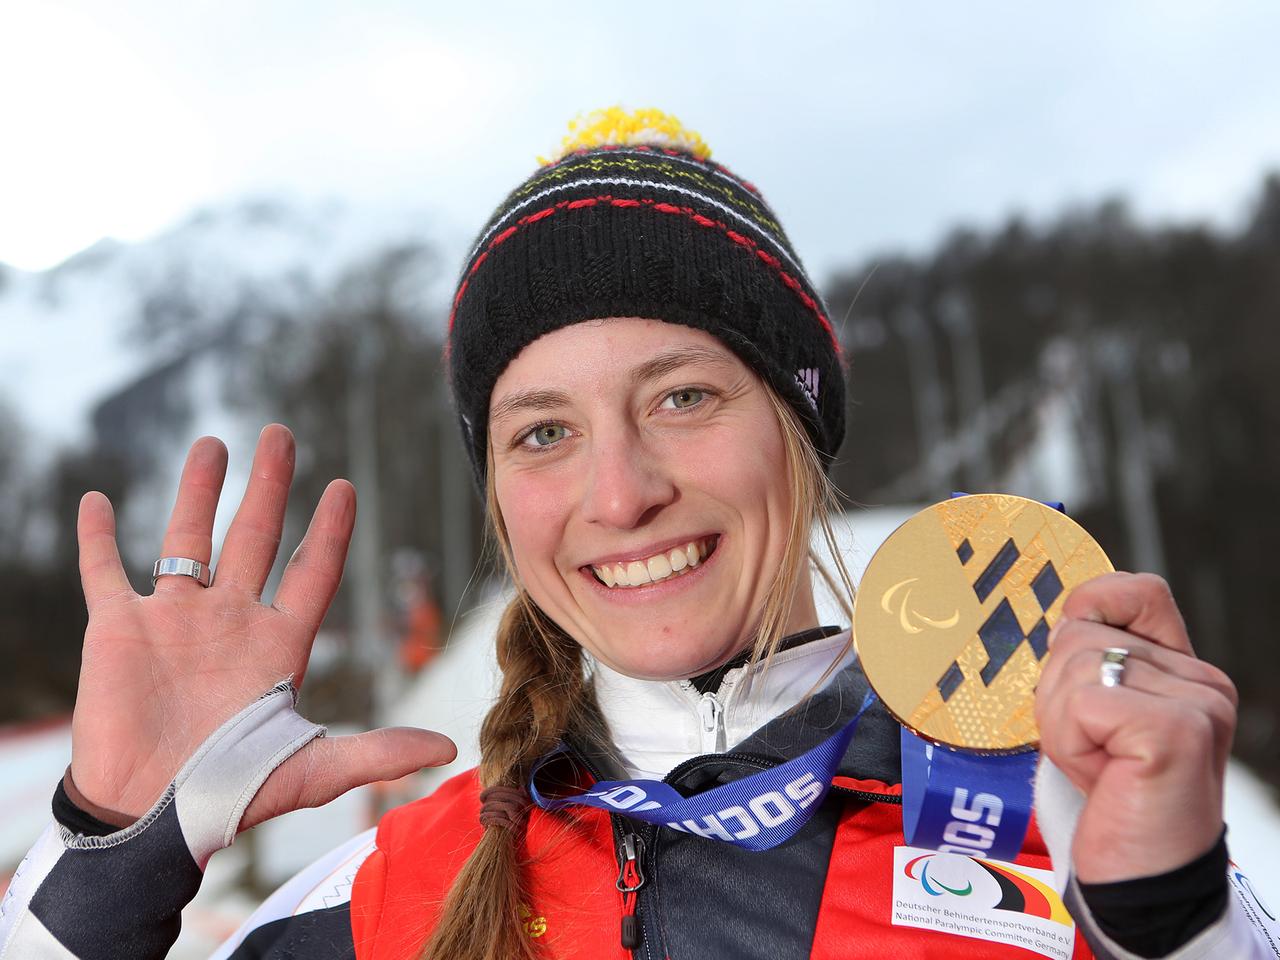 Die deutsche Mono-Ski-Fahrerin Anna Schaffelhuber hält ihre fünfte Goldmedaille bei den Paralympics in Sotschi strahlend in die Höhe und zeigt mit der anderen Hand die Zahl Fünf an.